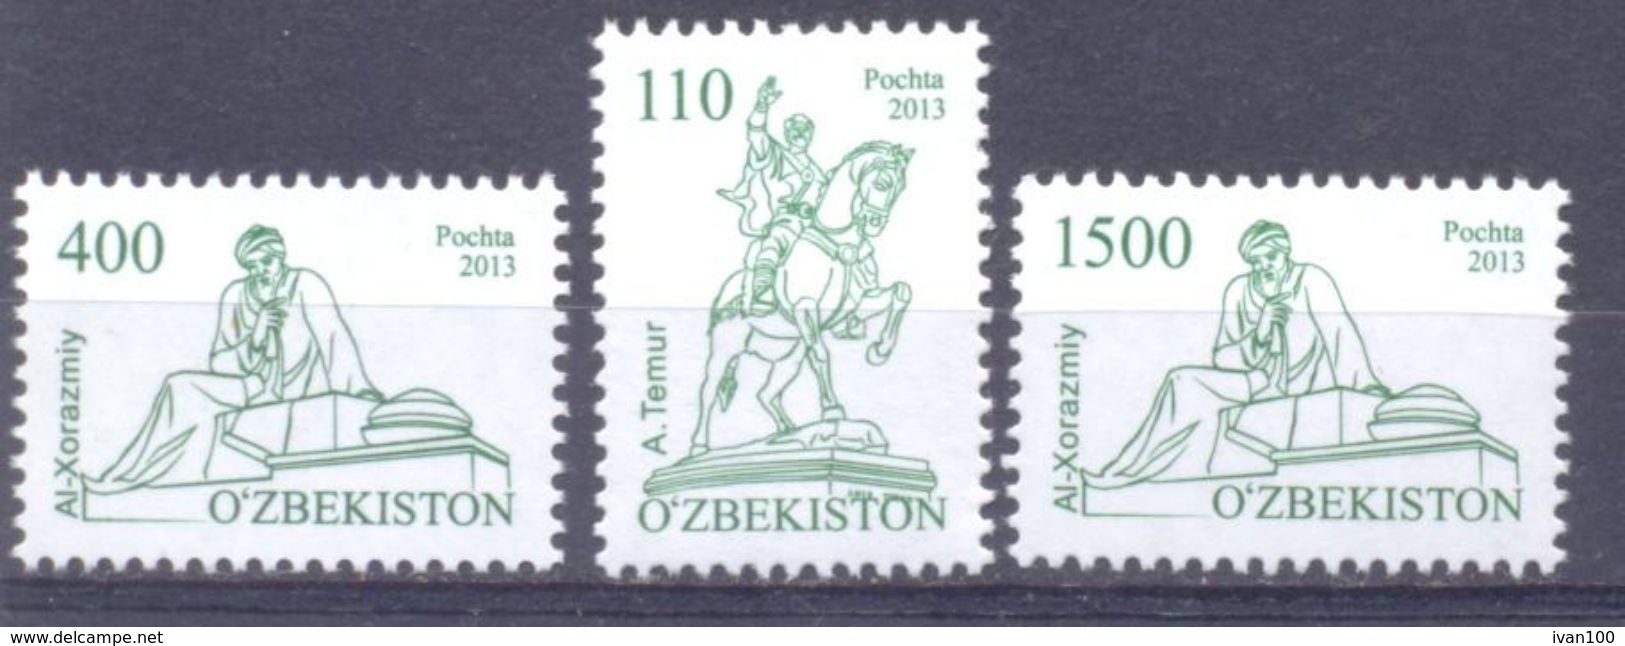 2012. Uzbekistan, Definitives, Monuments, 3v, Mint/** - Uzbekistan